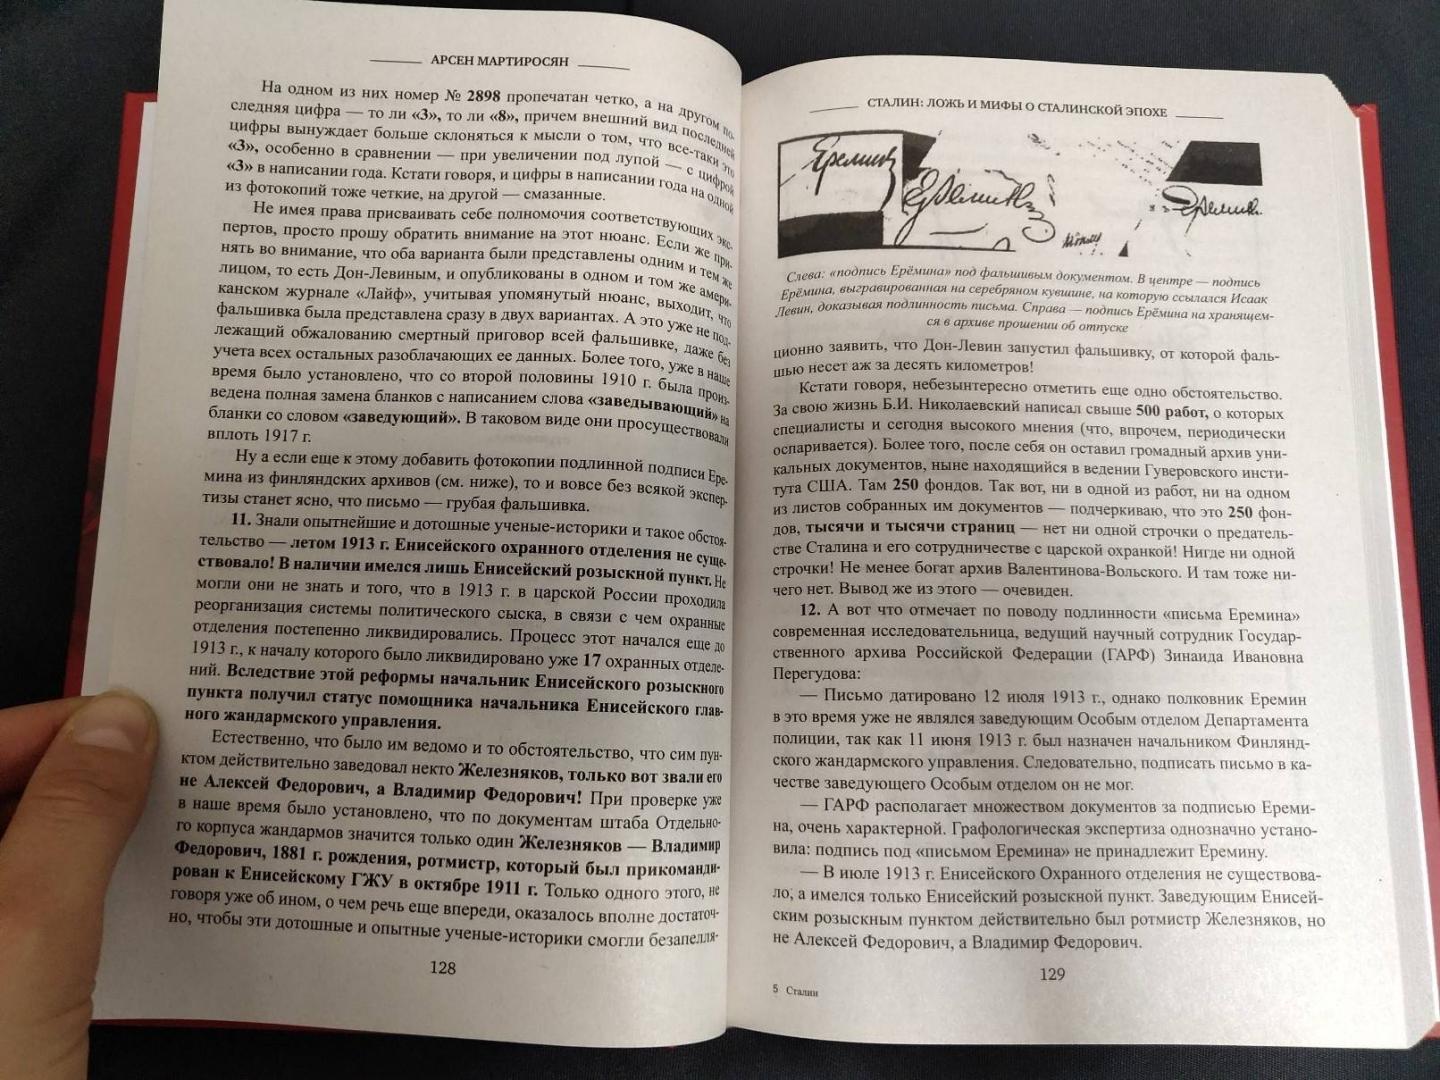 Иллюстрация 8 из 19 для Сталин: ложь и мифы о сталинской эпохе - Арсен Мартиросян | Лабиринт - книги. Источник: dbyyb